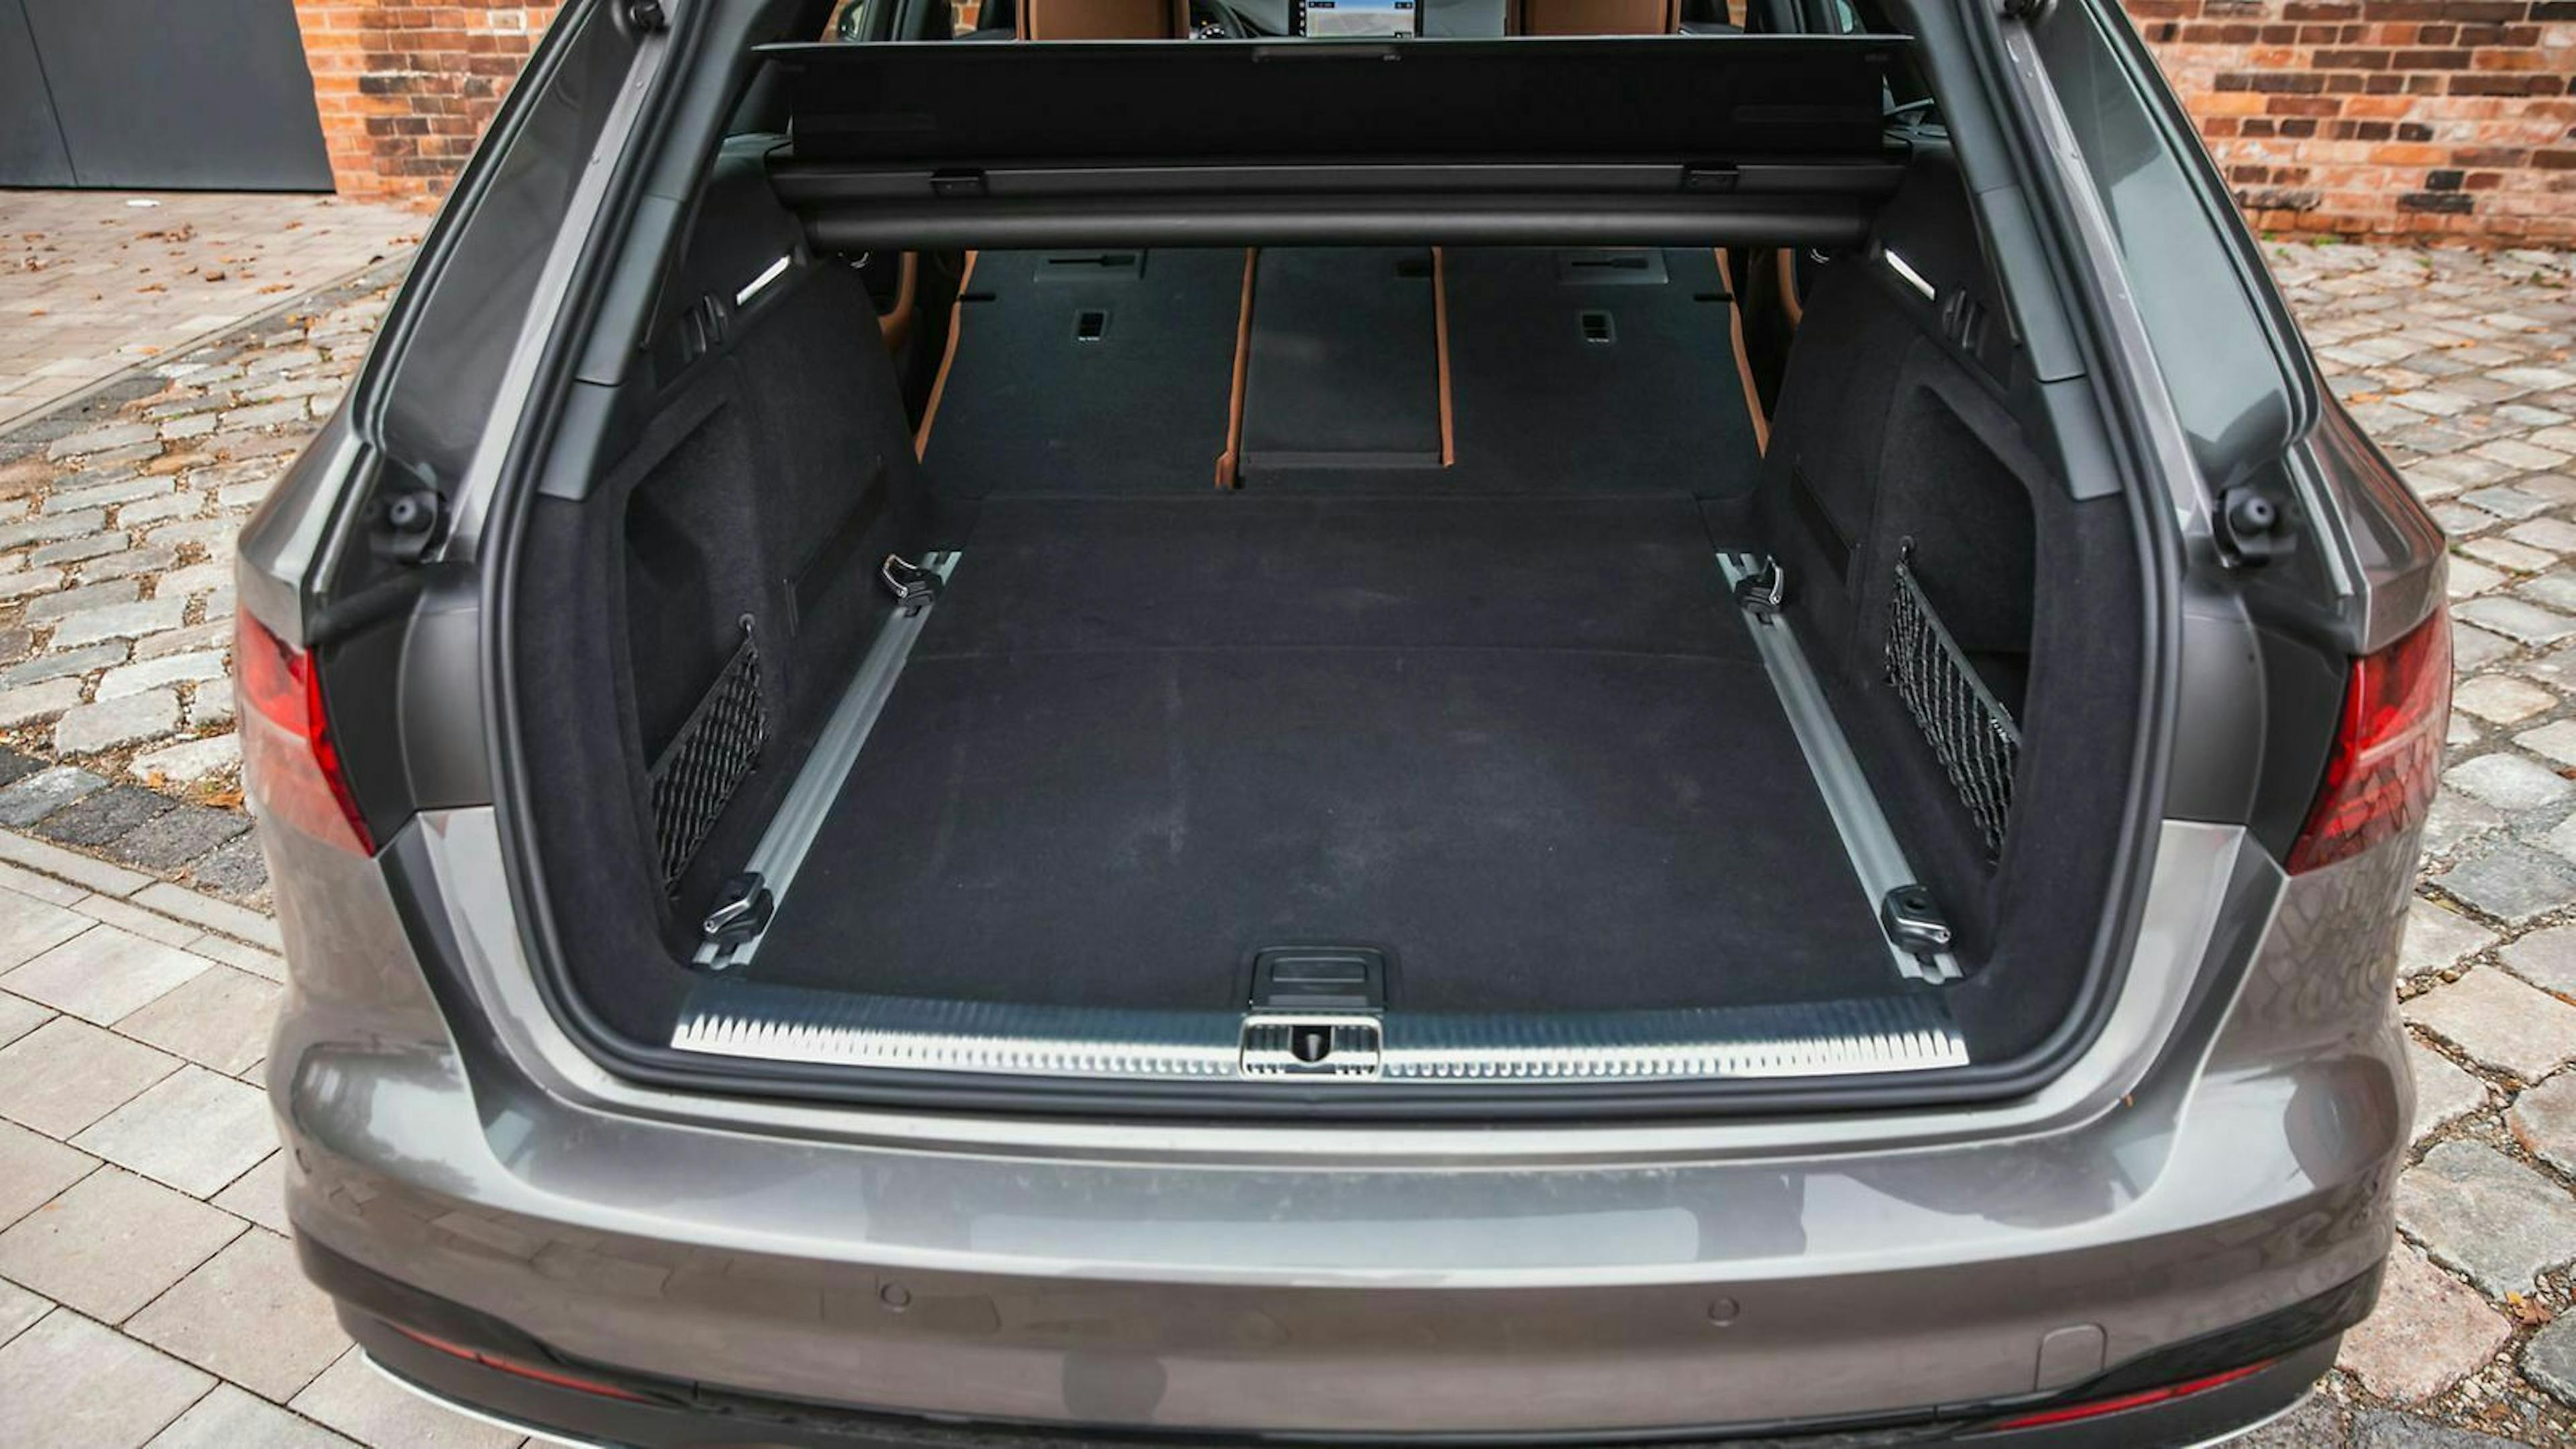 Zu sehen ist der Kofferraum des Audi A4 40 TDI Quattro mit umgeklappter Rückbank. Das Kofferraumvolumen beträgt 1.496 Liter